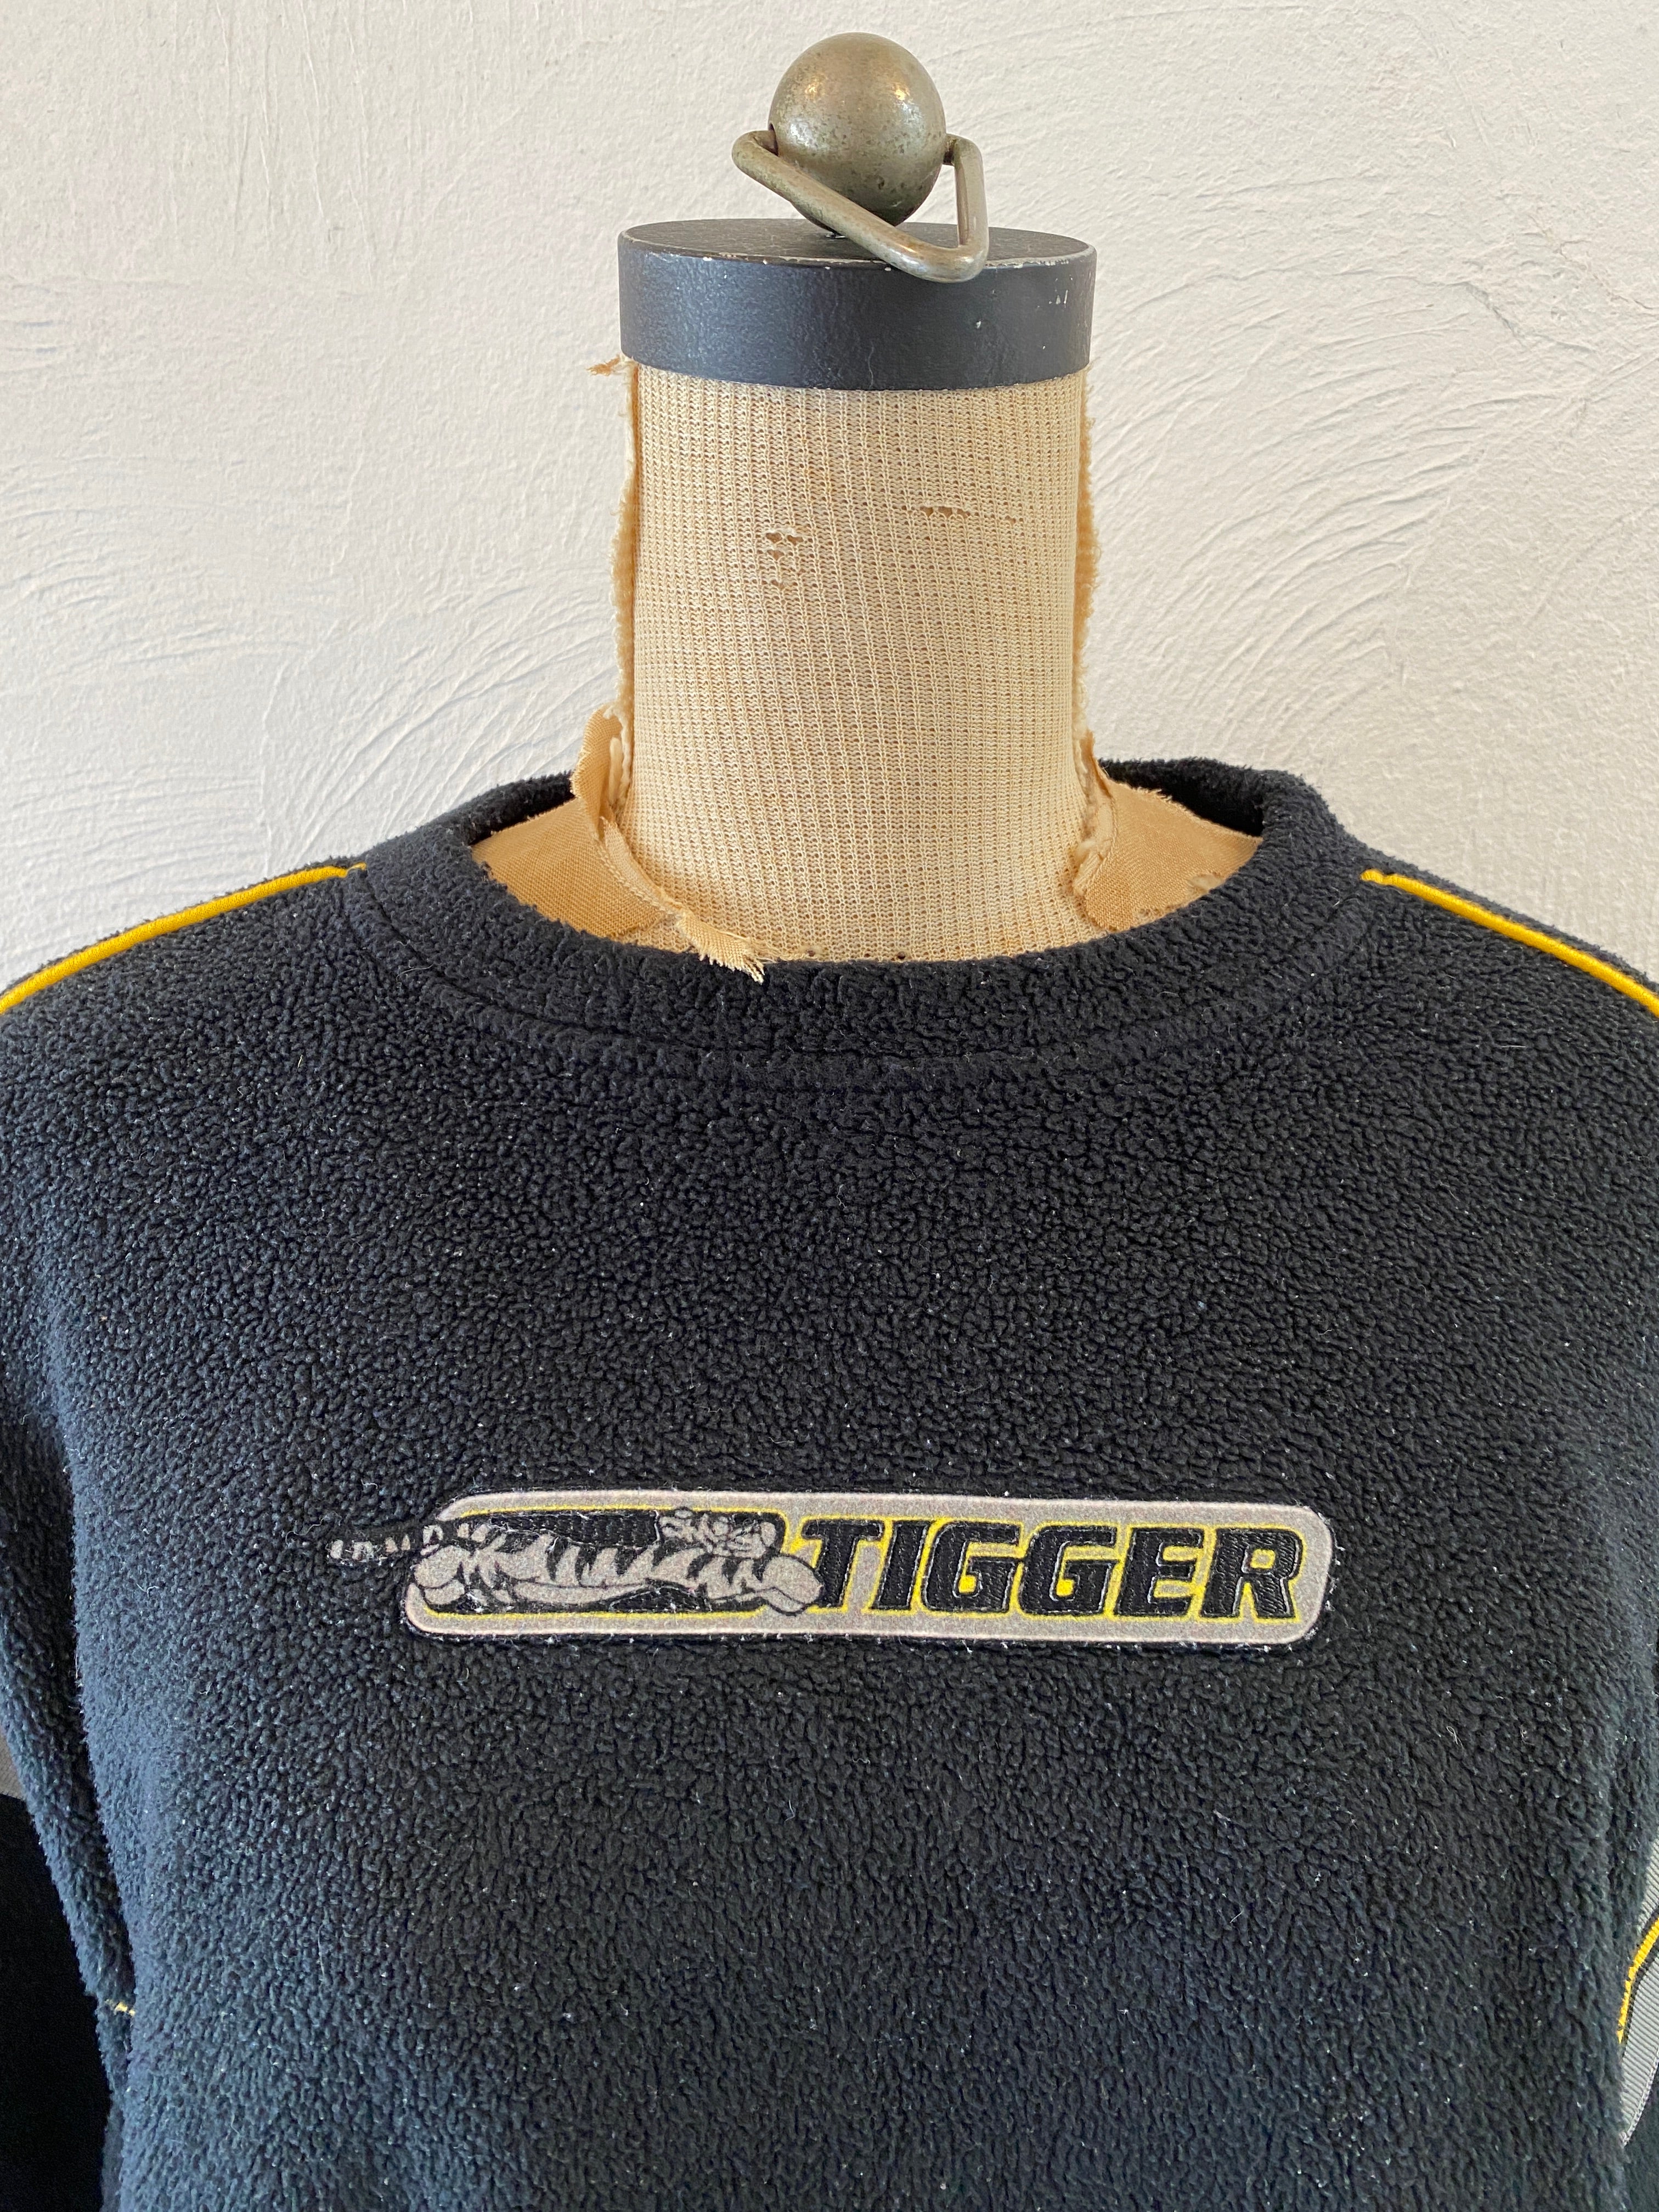 tiger fleece pullover